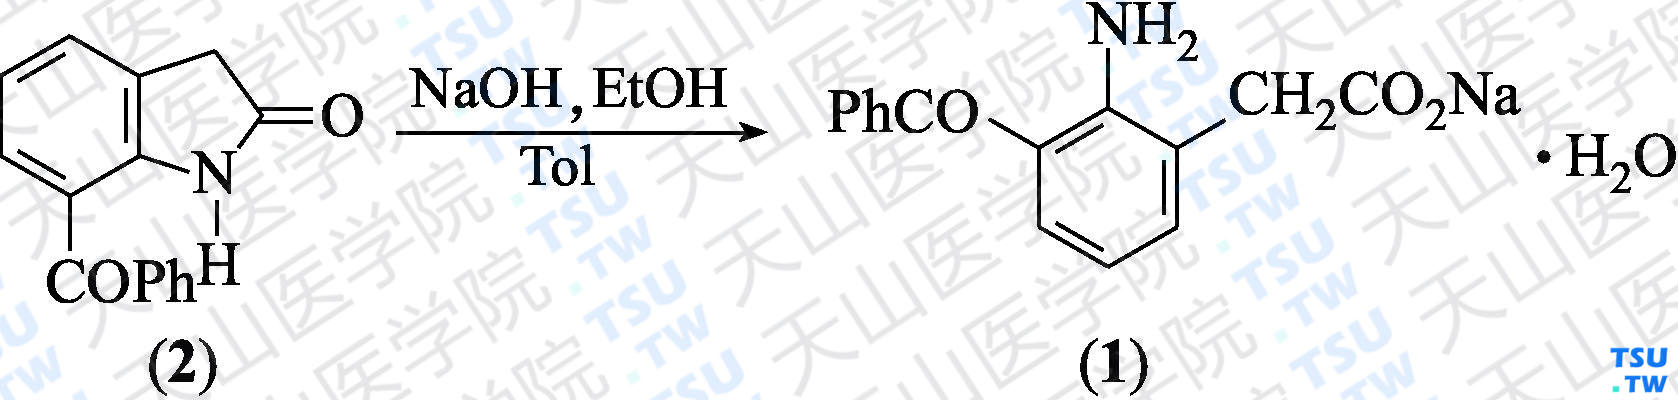 氨芬酸钠（分子式：C<sub>15</sub>H<sub>12</sub>NO<sub>3</sub>Na·H<sub>2</sub>O）的合成方法路线及其结构式